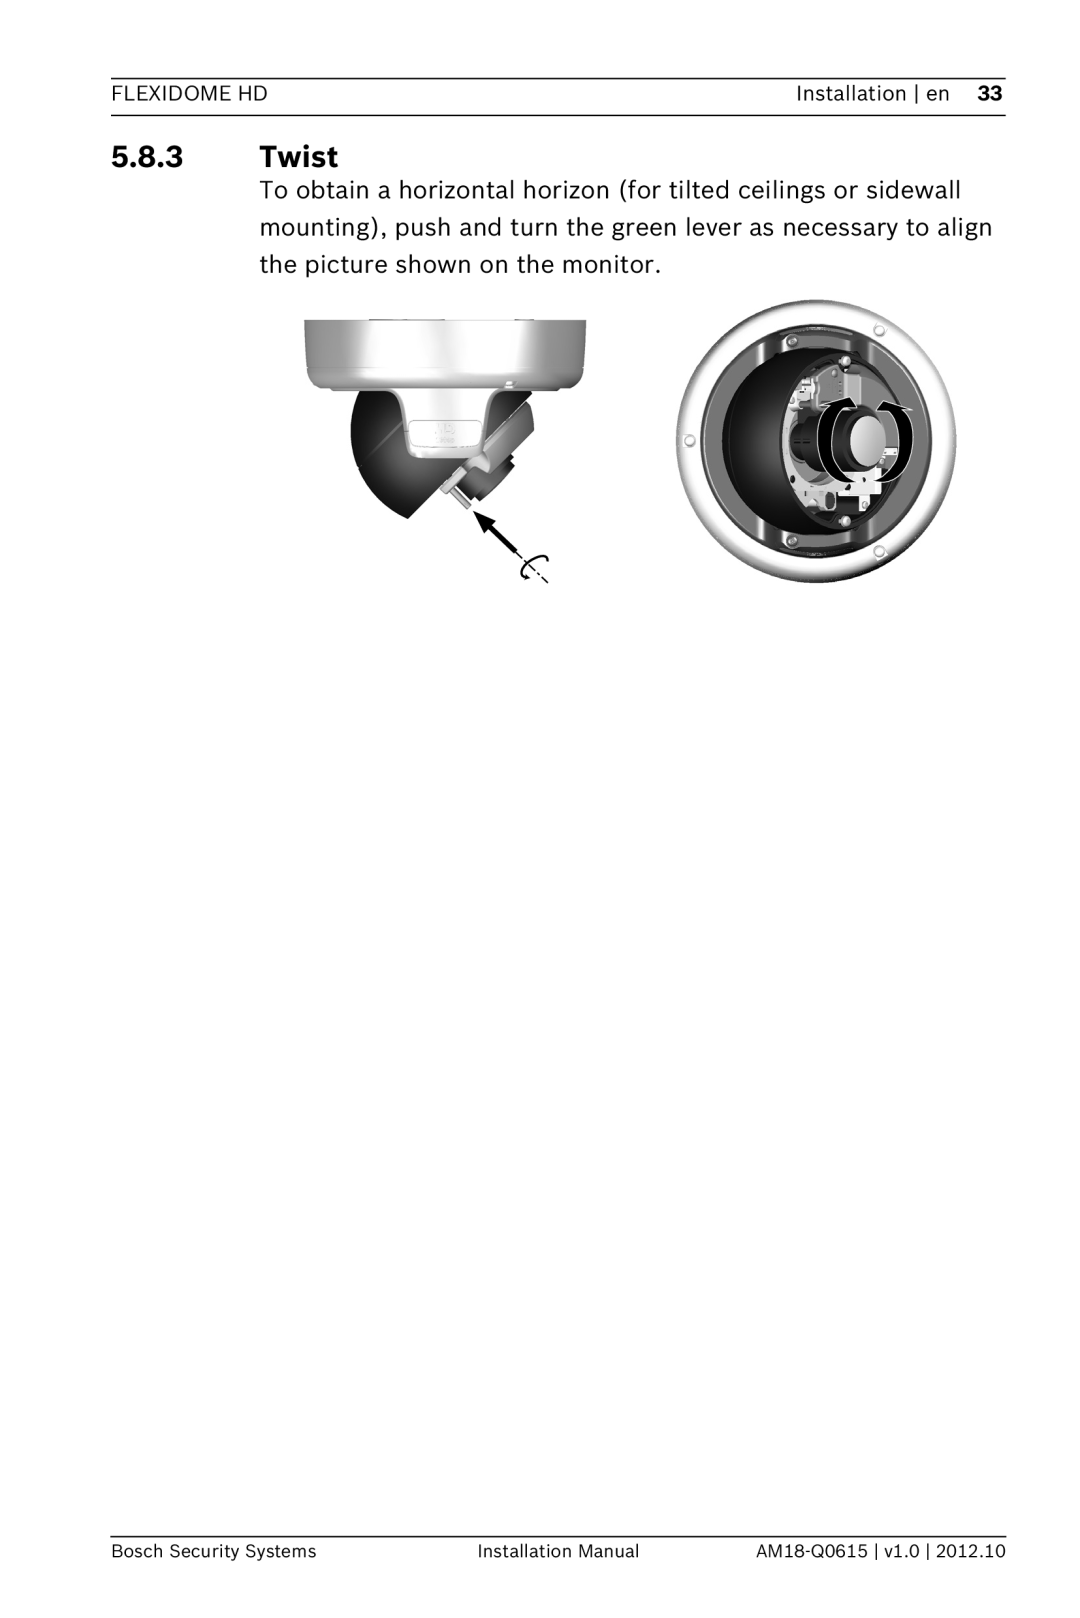 Bosch Appliances NDN-733 5.8.3Twist, Flexidome Hd, Installation en, Bosch Security Systems, Installation Manual 